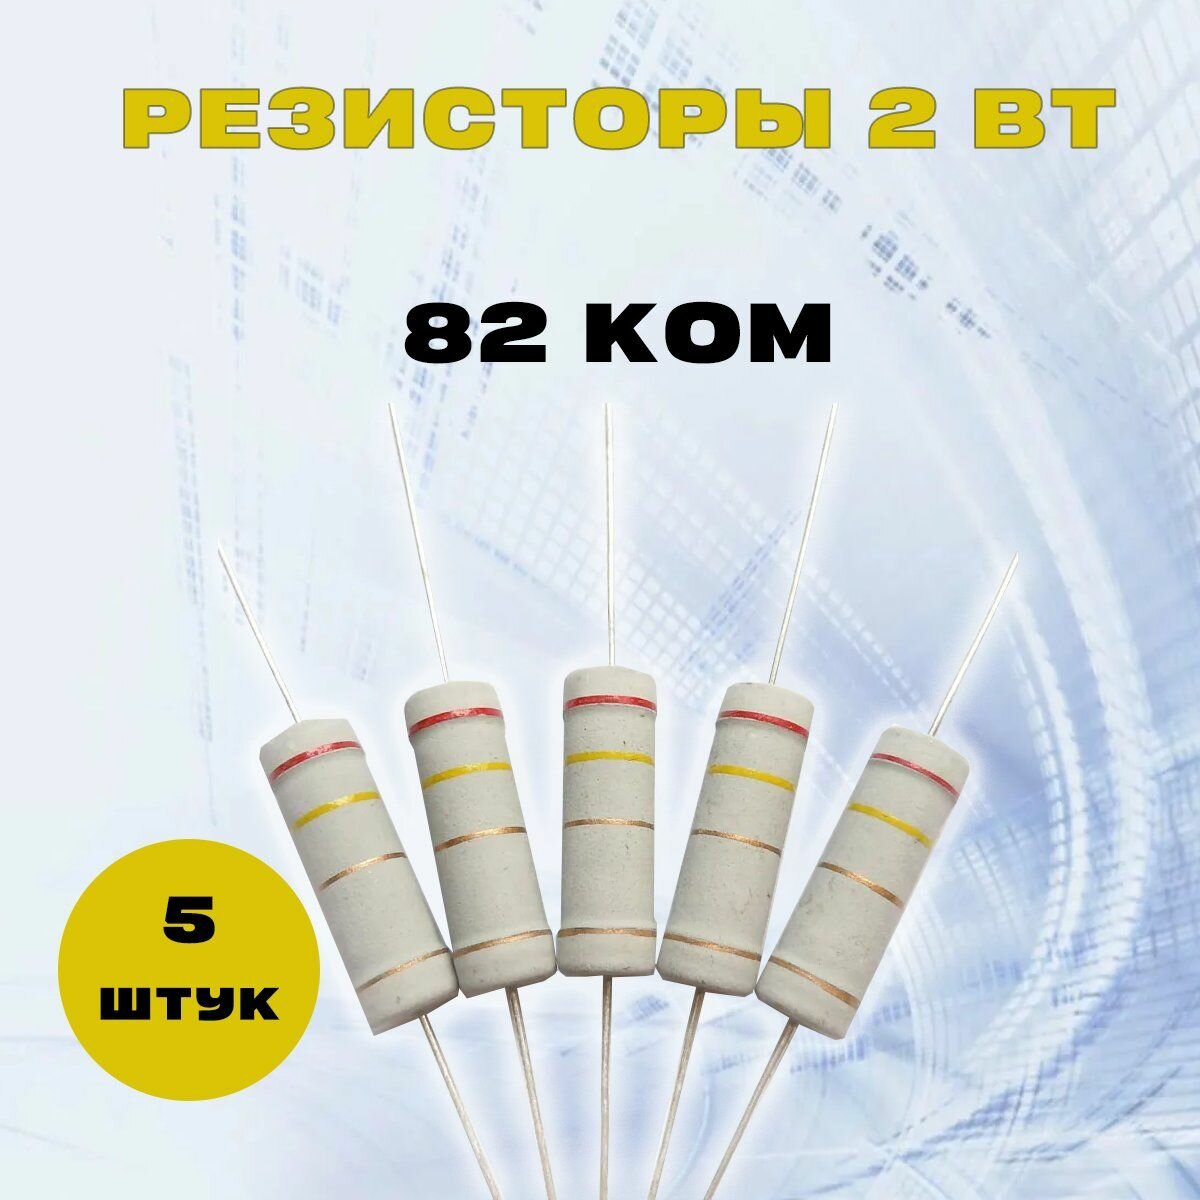 Резистор 2W 82K kOm - 2 Вт 82 кОм